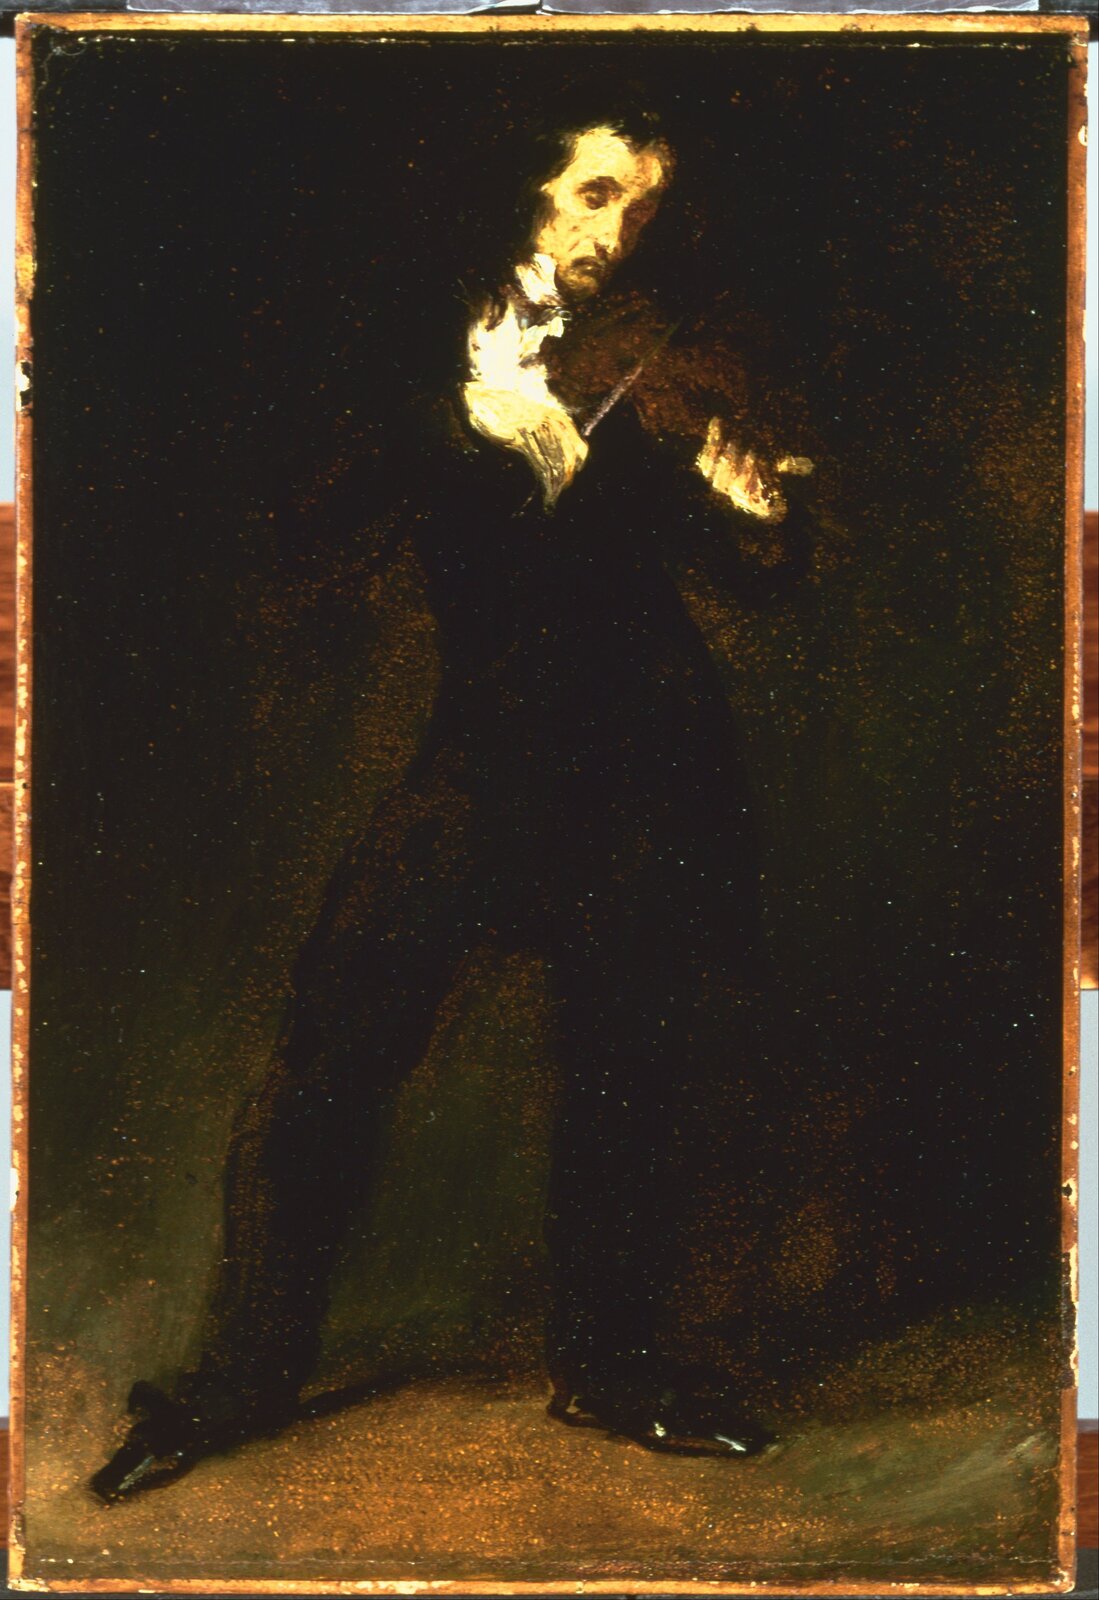 Ilustracja interaktywna o kształcie pionowego prostokąta przedstawia obraz Eugène’a Delacroixa „Paganini”. Mężczyzna przedstawiony jest w całej postaci, stoi frontalnie do widza, z wysuniętą prawą nogą. Gra na skrzypcach. Postać zlewa się z ciemnym tłem. Uwagę zwracają oświetlone elementy – twarz i dłonie skrzypka. 